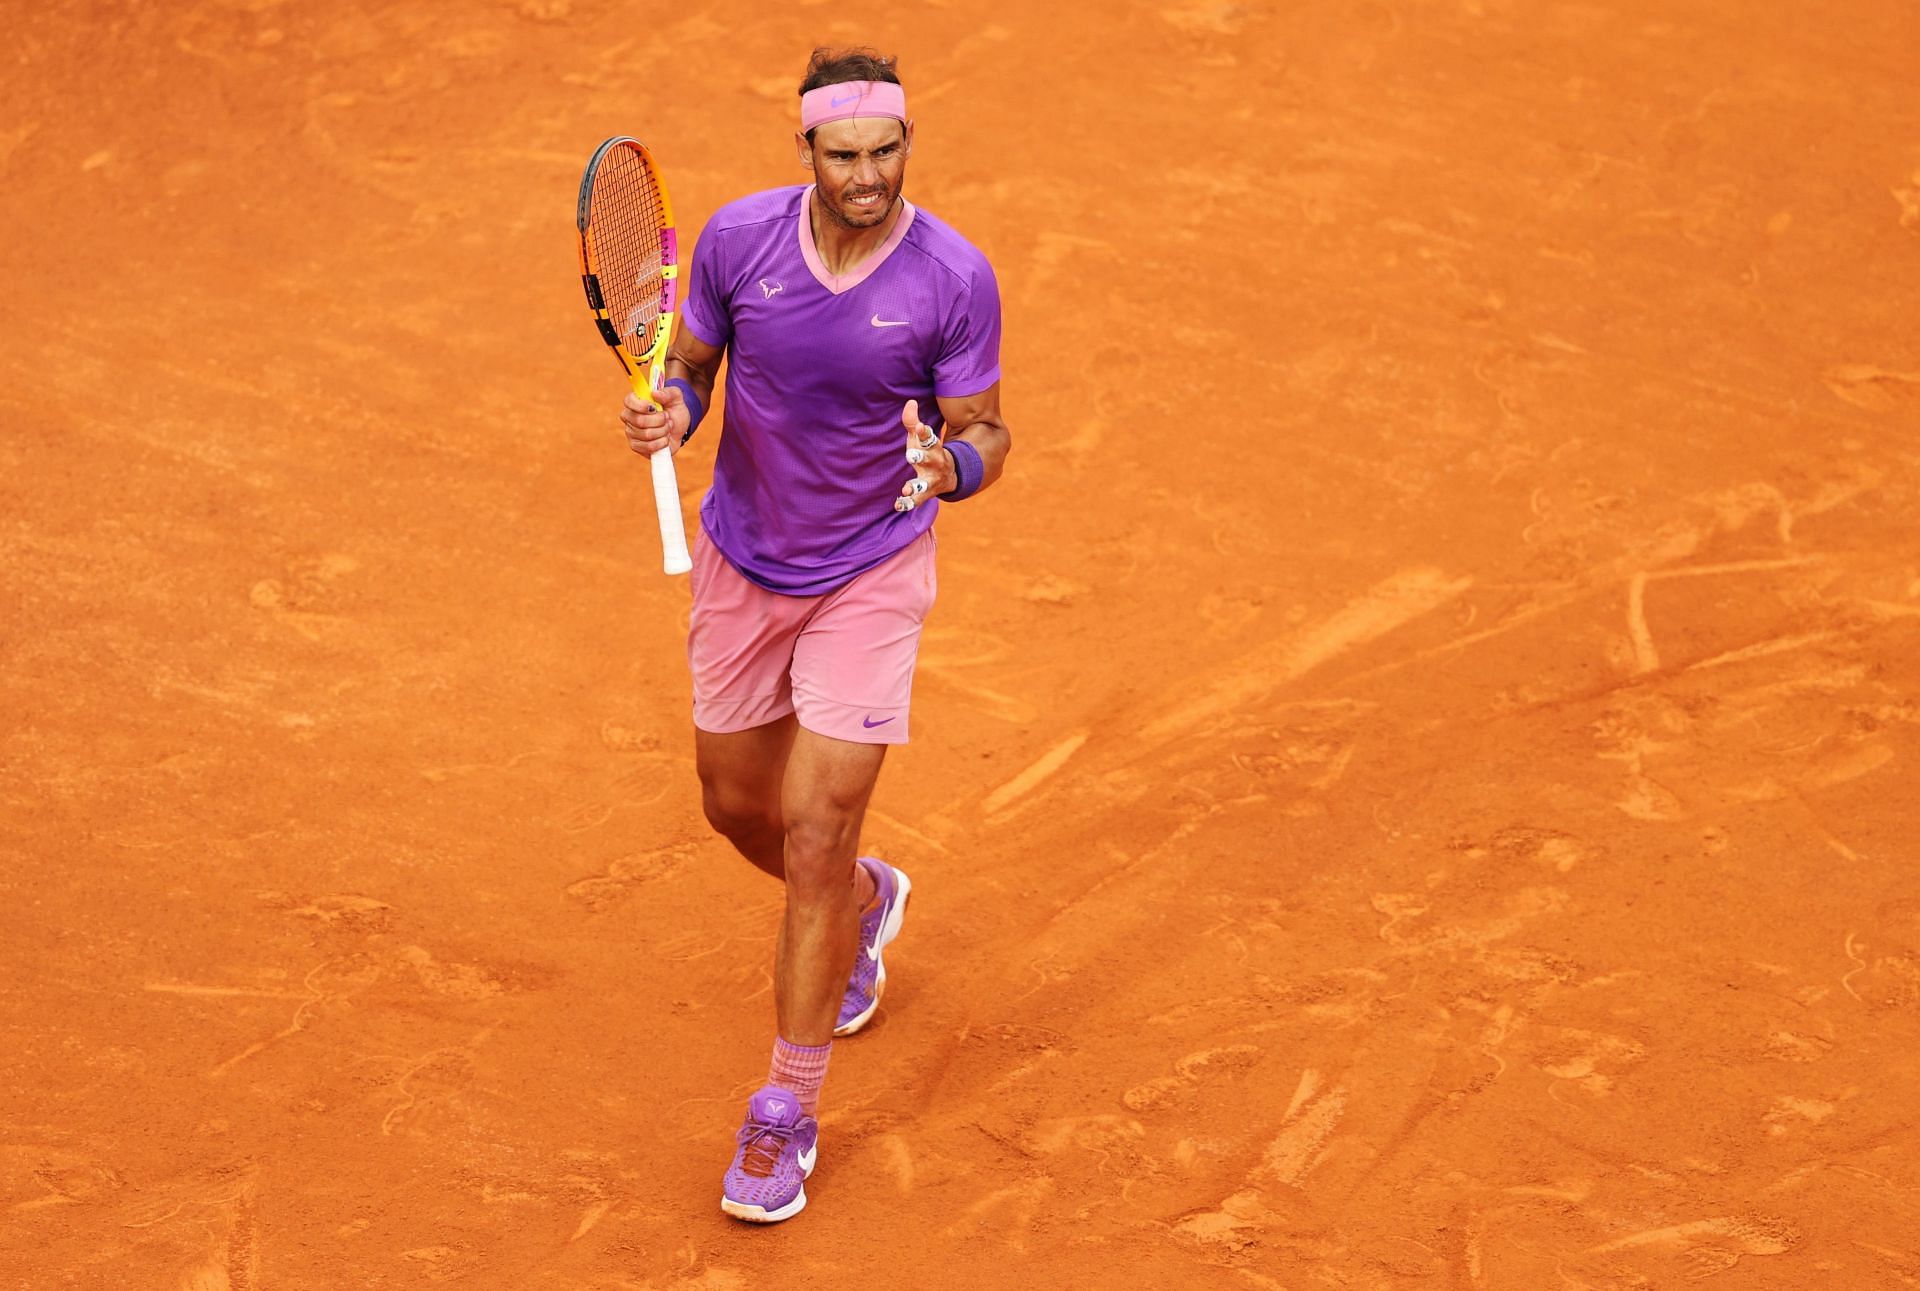 Rafael Nadal beat Novak Djokovic to win his 10th Italian Open title